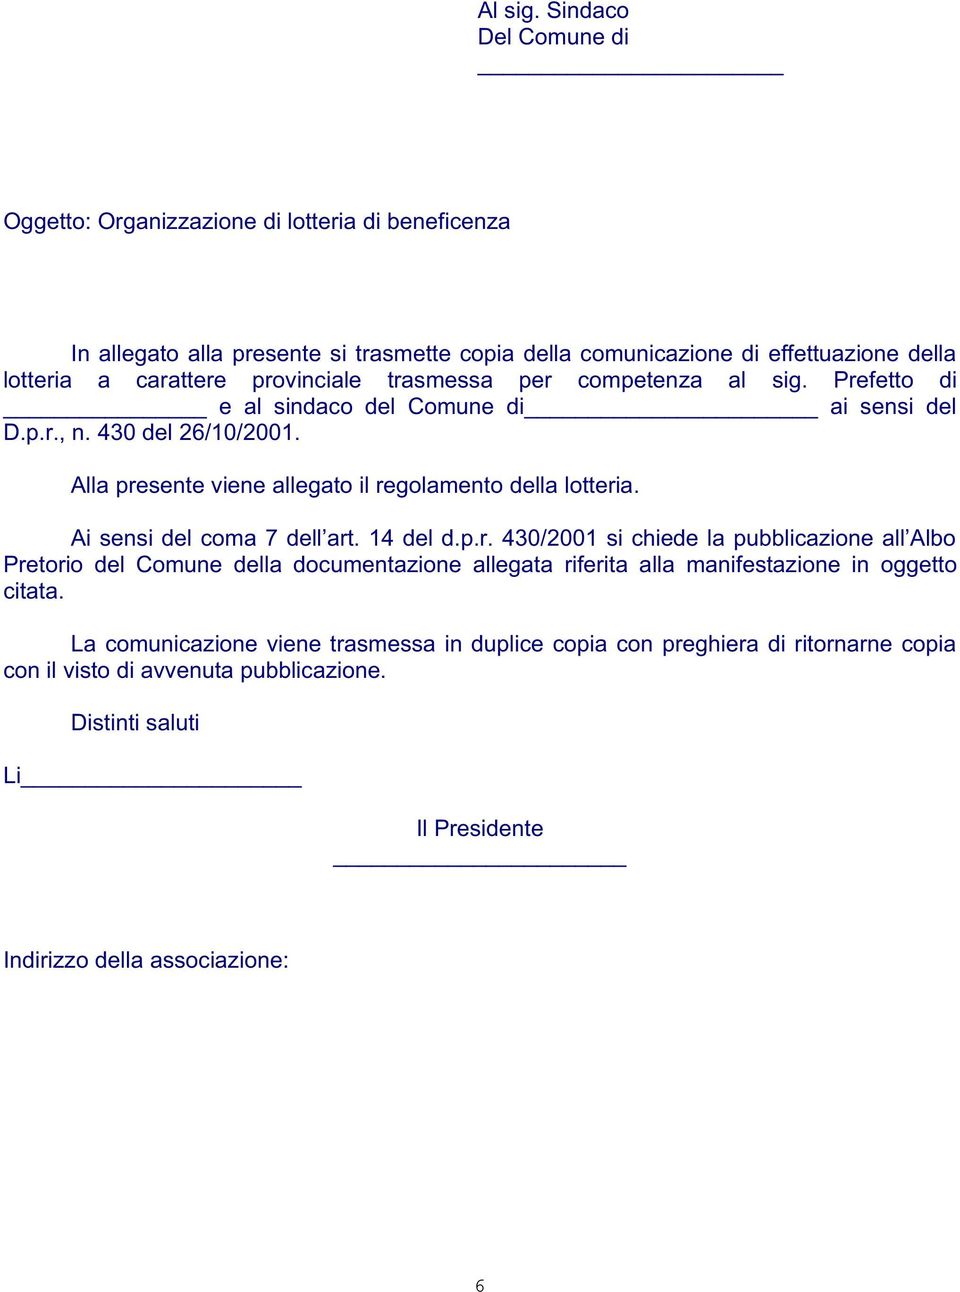 provinciale trasmessa per competenza al sig. Prefetto di e al sindaco del Comune di ai sensi del D.p.r., n. 430 del 26/10/2001. Alla presente viene allegato il regolamento della lotteria.